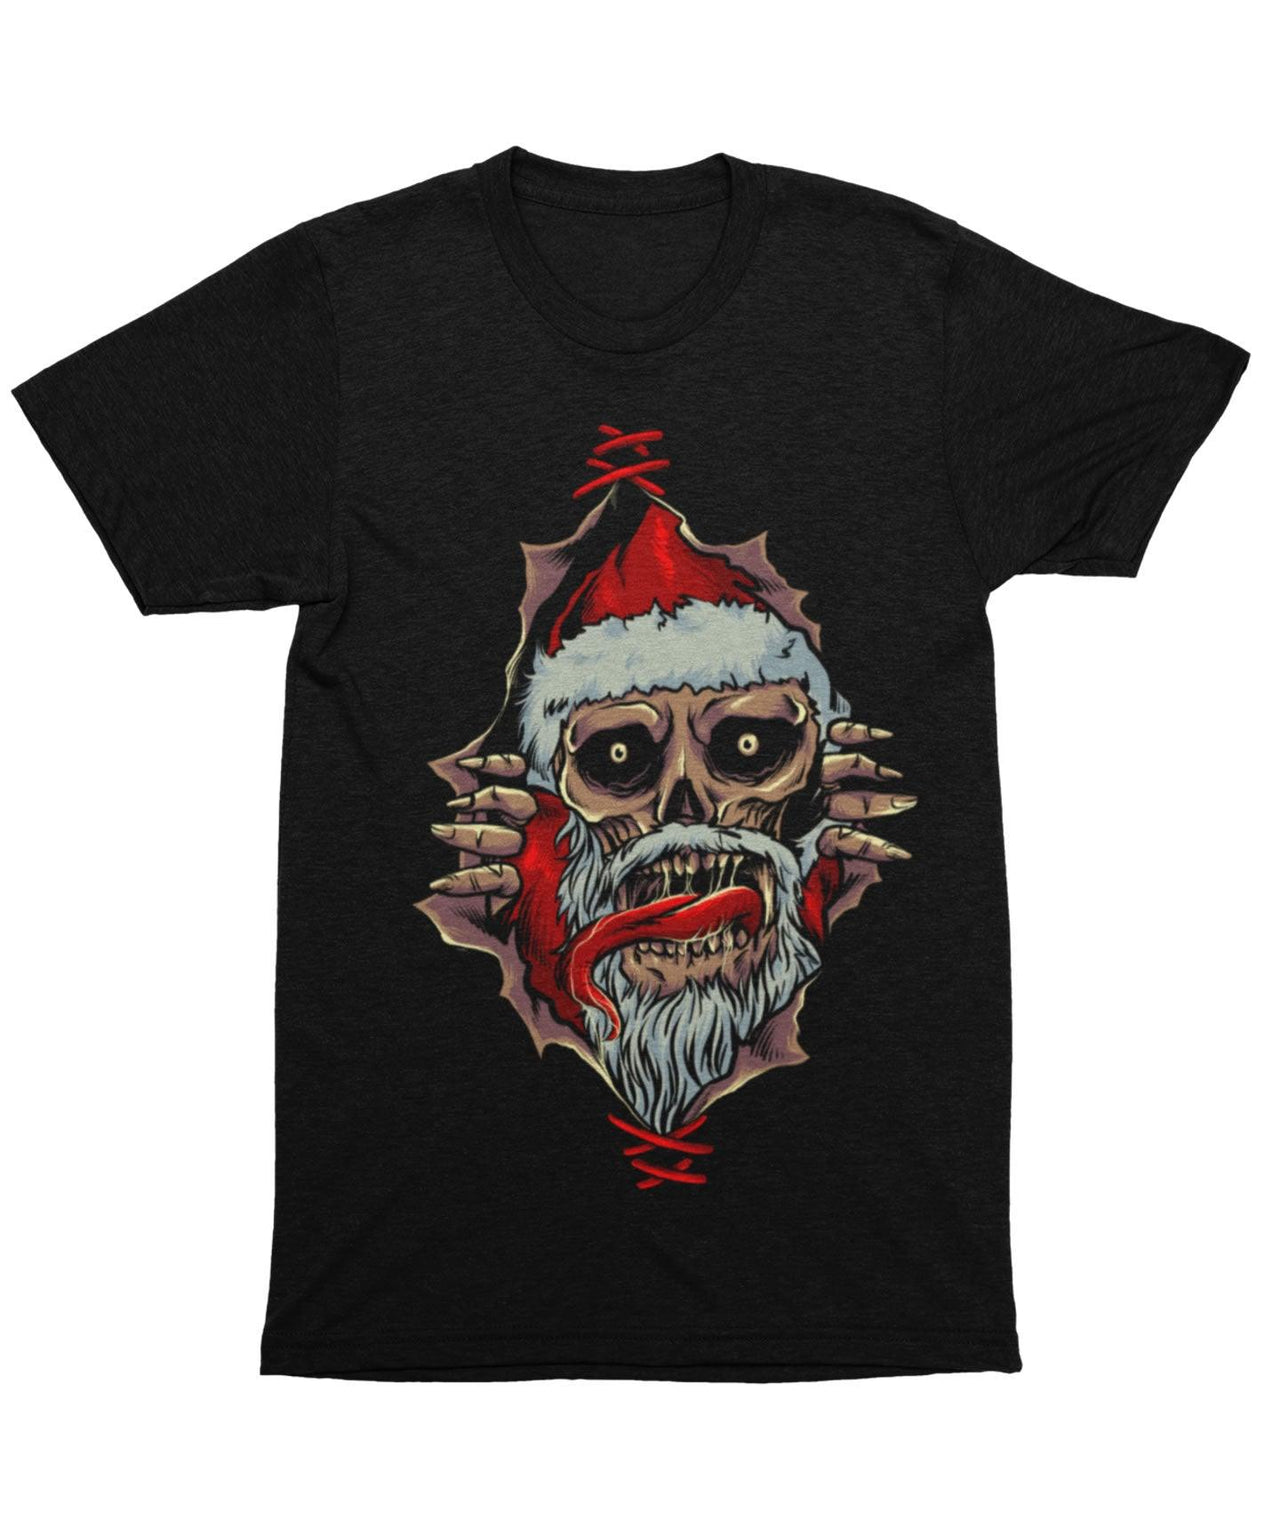 Santa Skull Peek-A-Boo Unisex Christmas T-Shirt For Men 8Ball